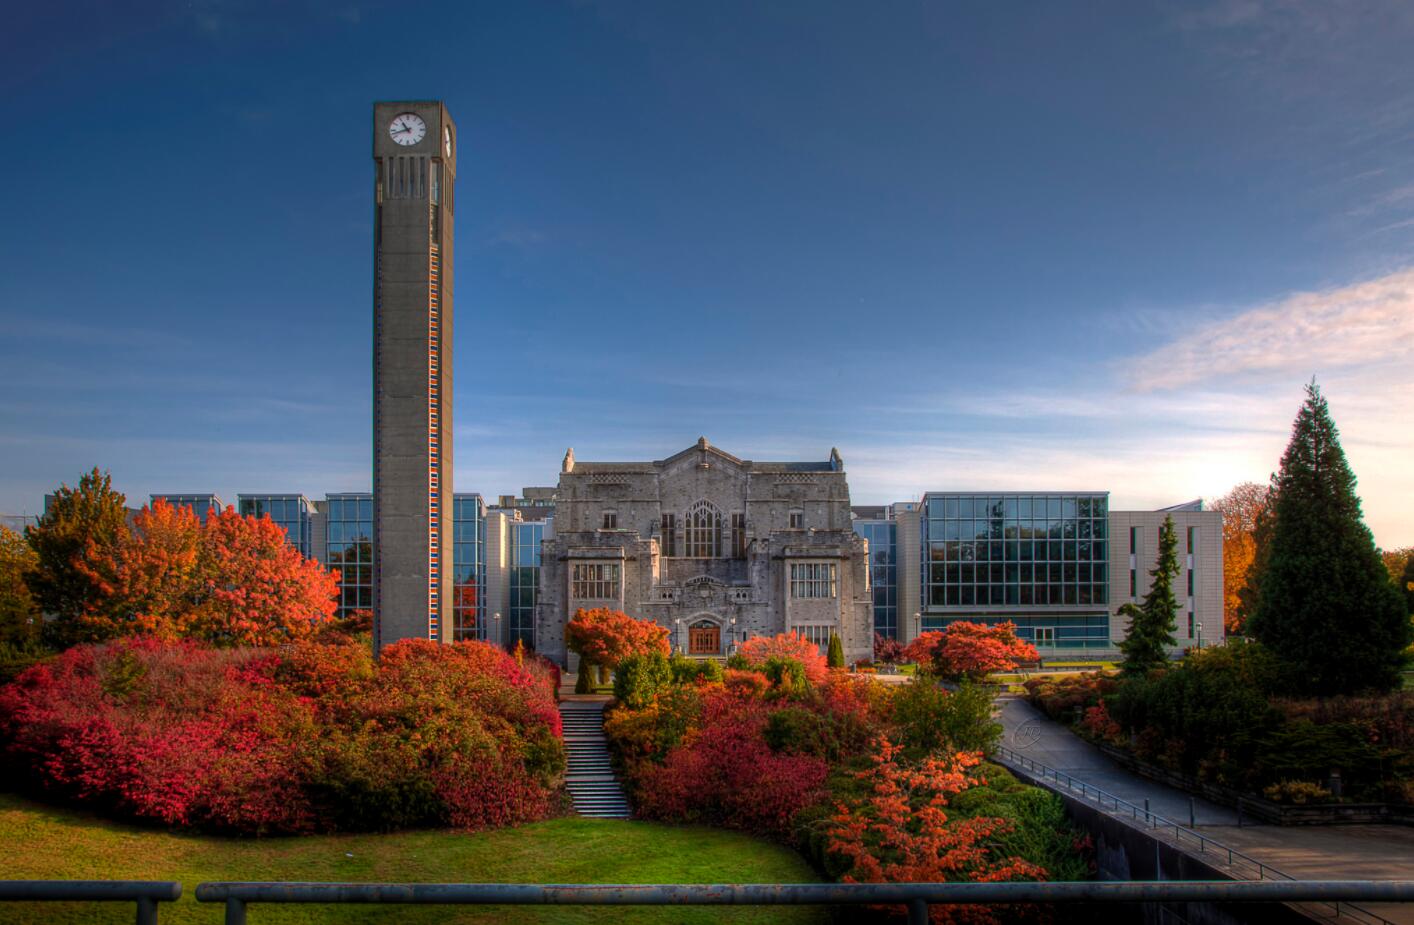 British Columbia University